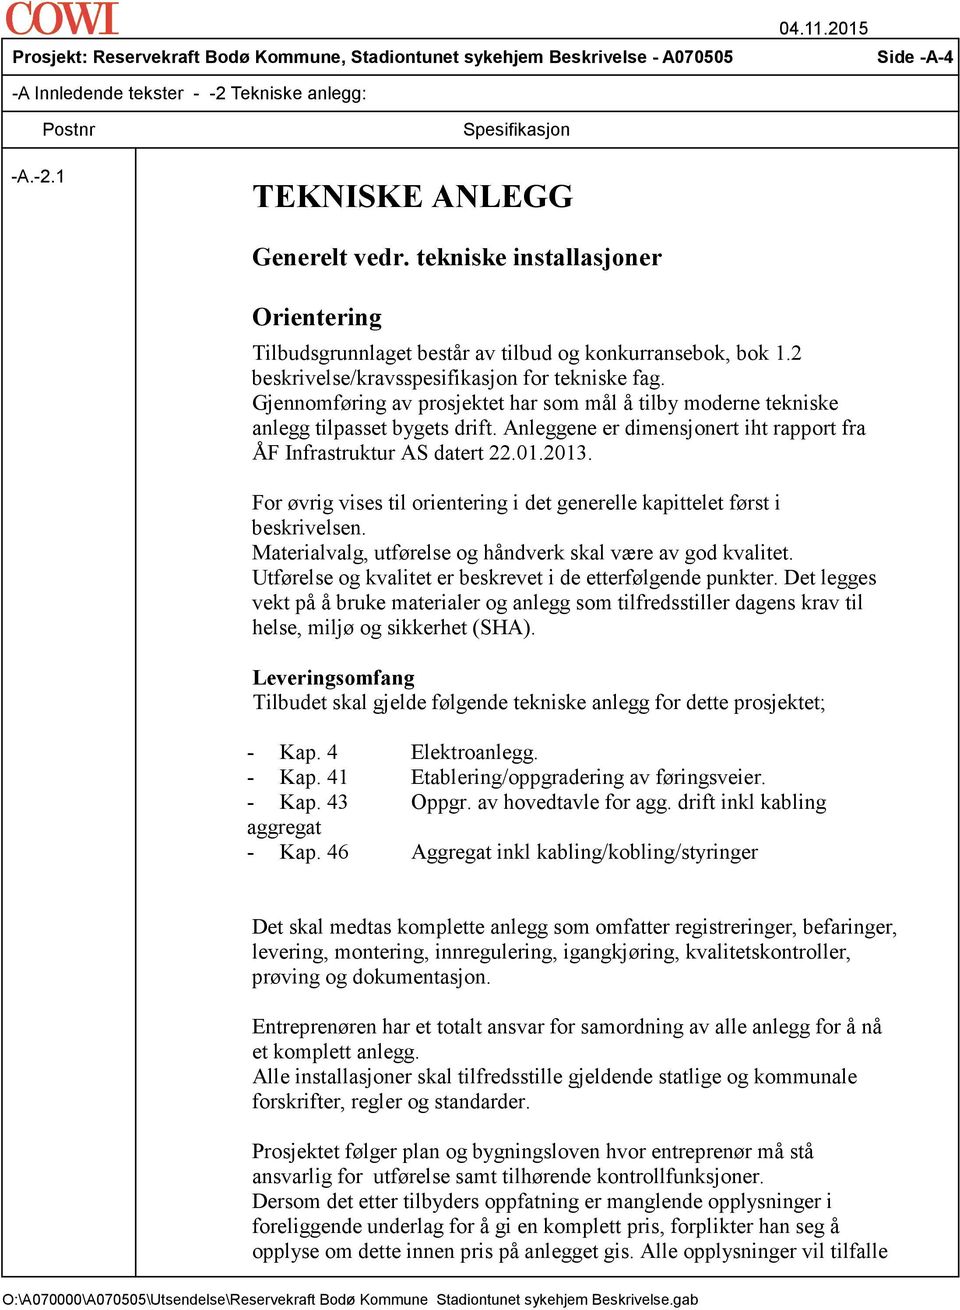 Anleggene er dimensjonert iht rapport fra ÅF Infrastruktur AS datert 22.01.2013. For øvrig vises til orientering i det generelle kapittelet først i beskrivelsen.